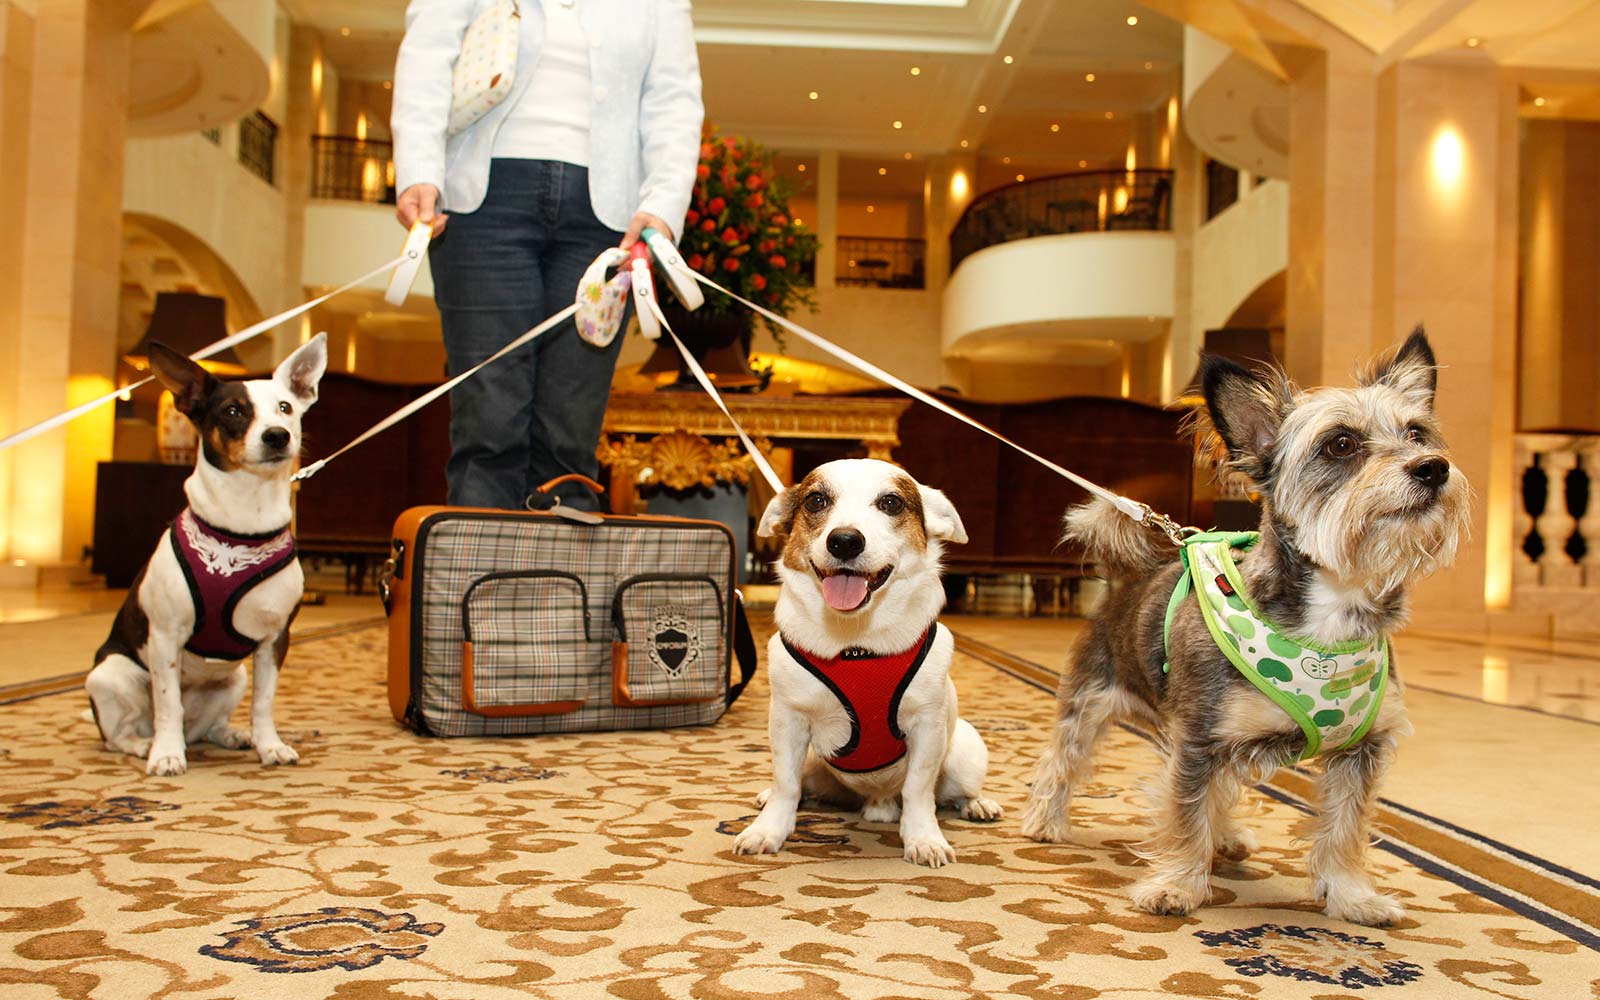 Comment trouver des hôtels adaptés aux animaux de compagnie